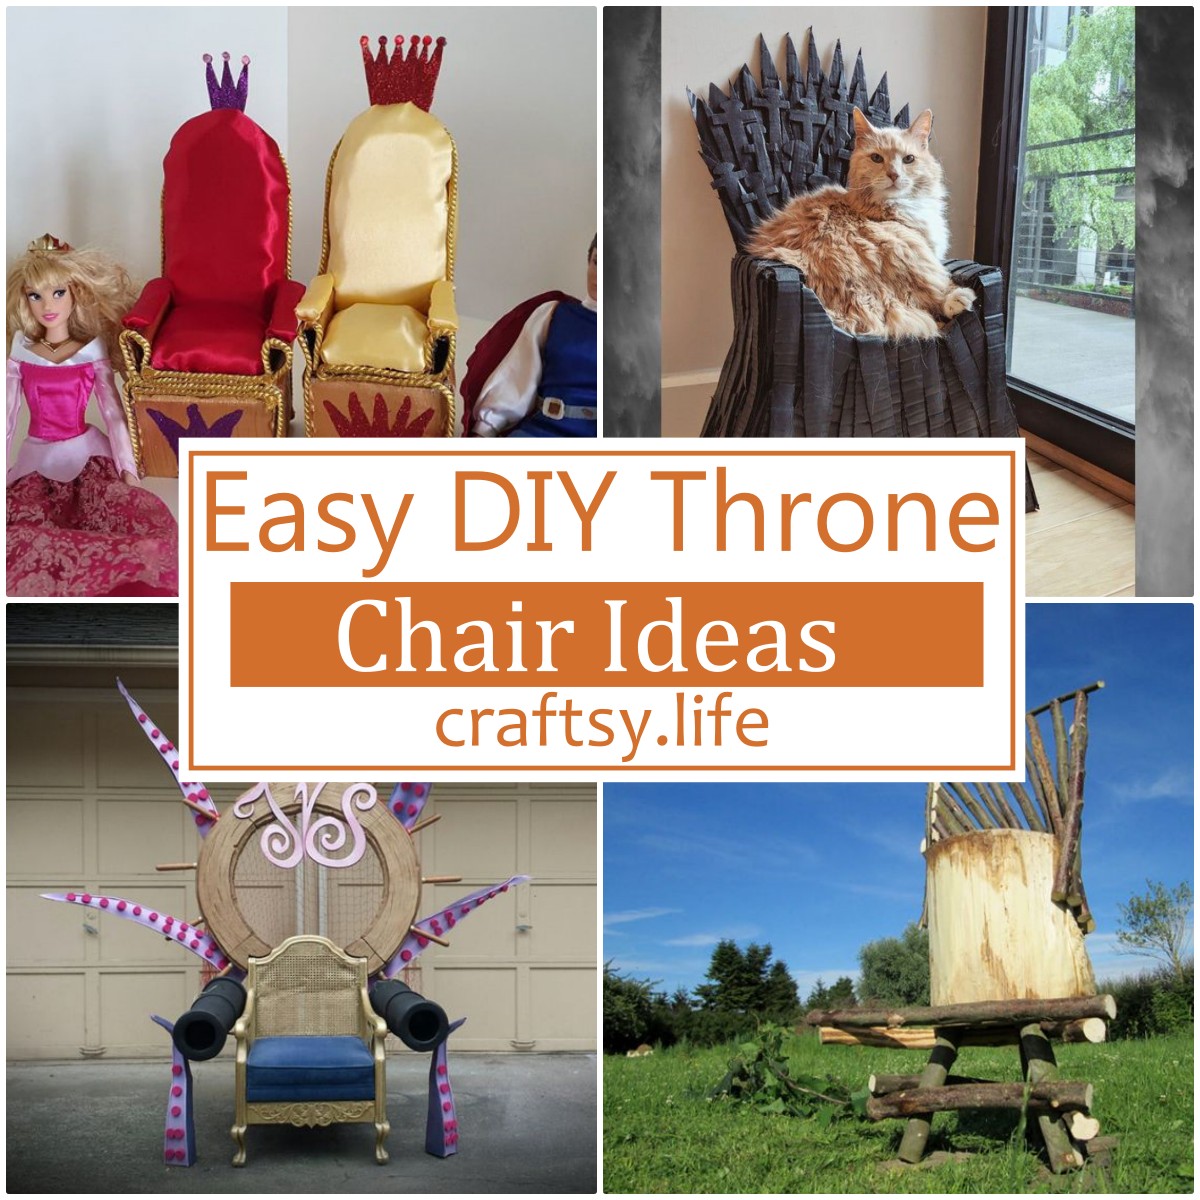 DIY Throne Chair Ideas